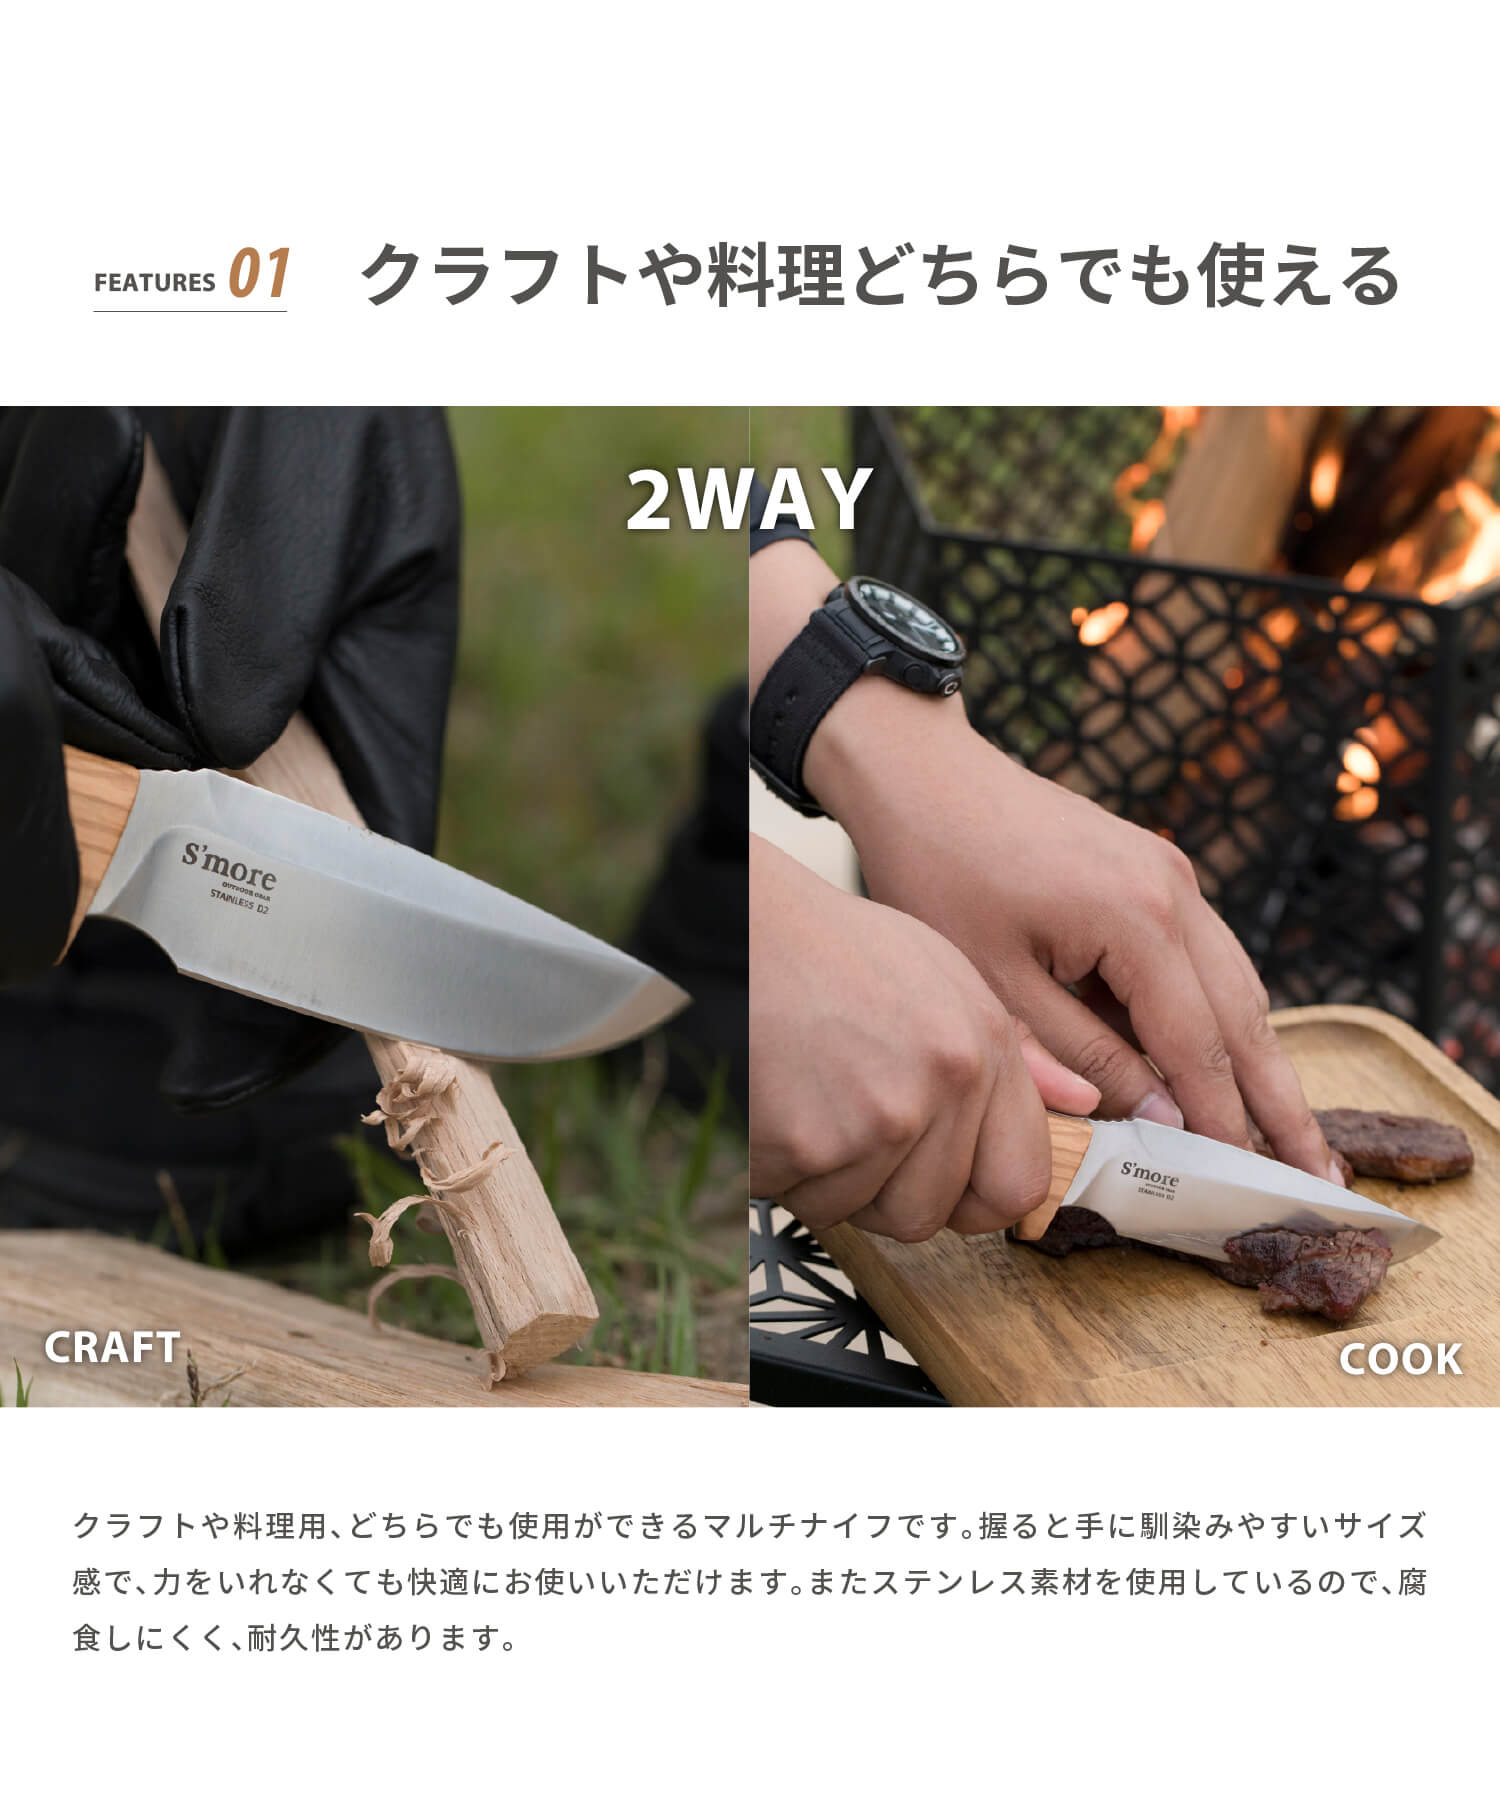 スモア New!! Copault knife（コポーナイフ）